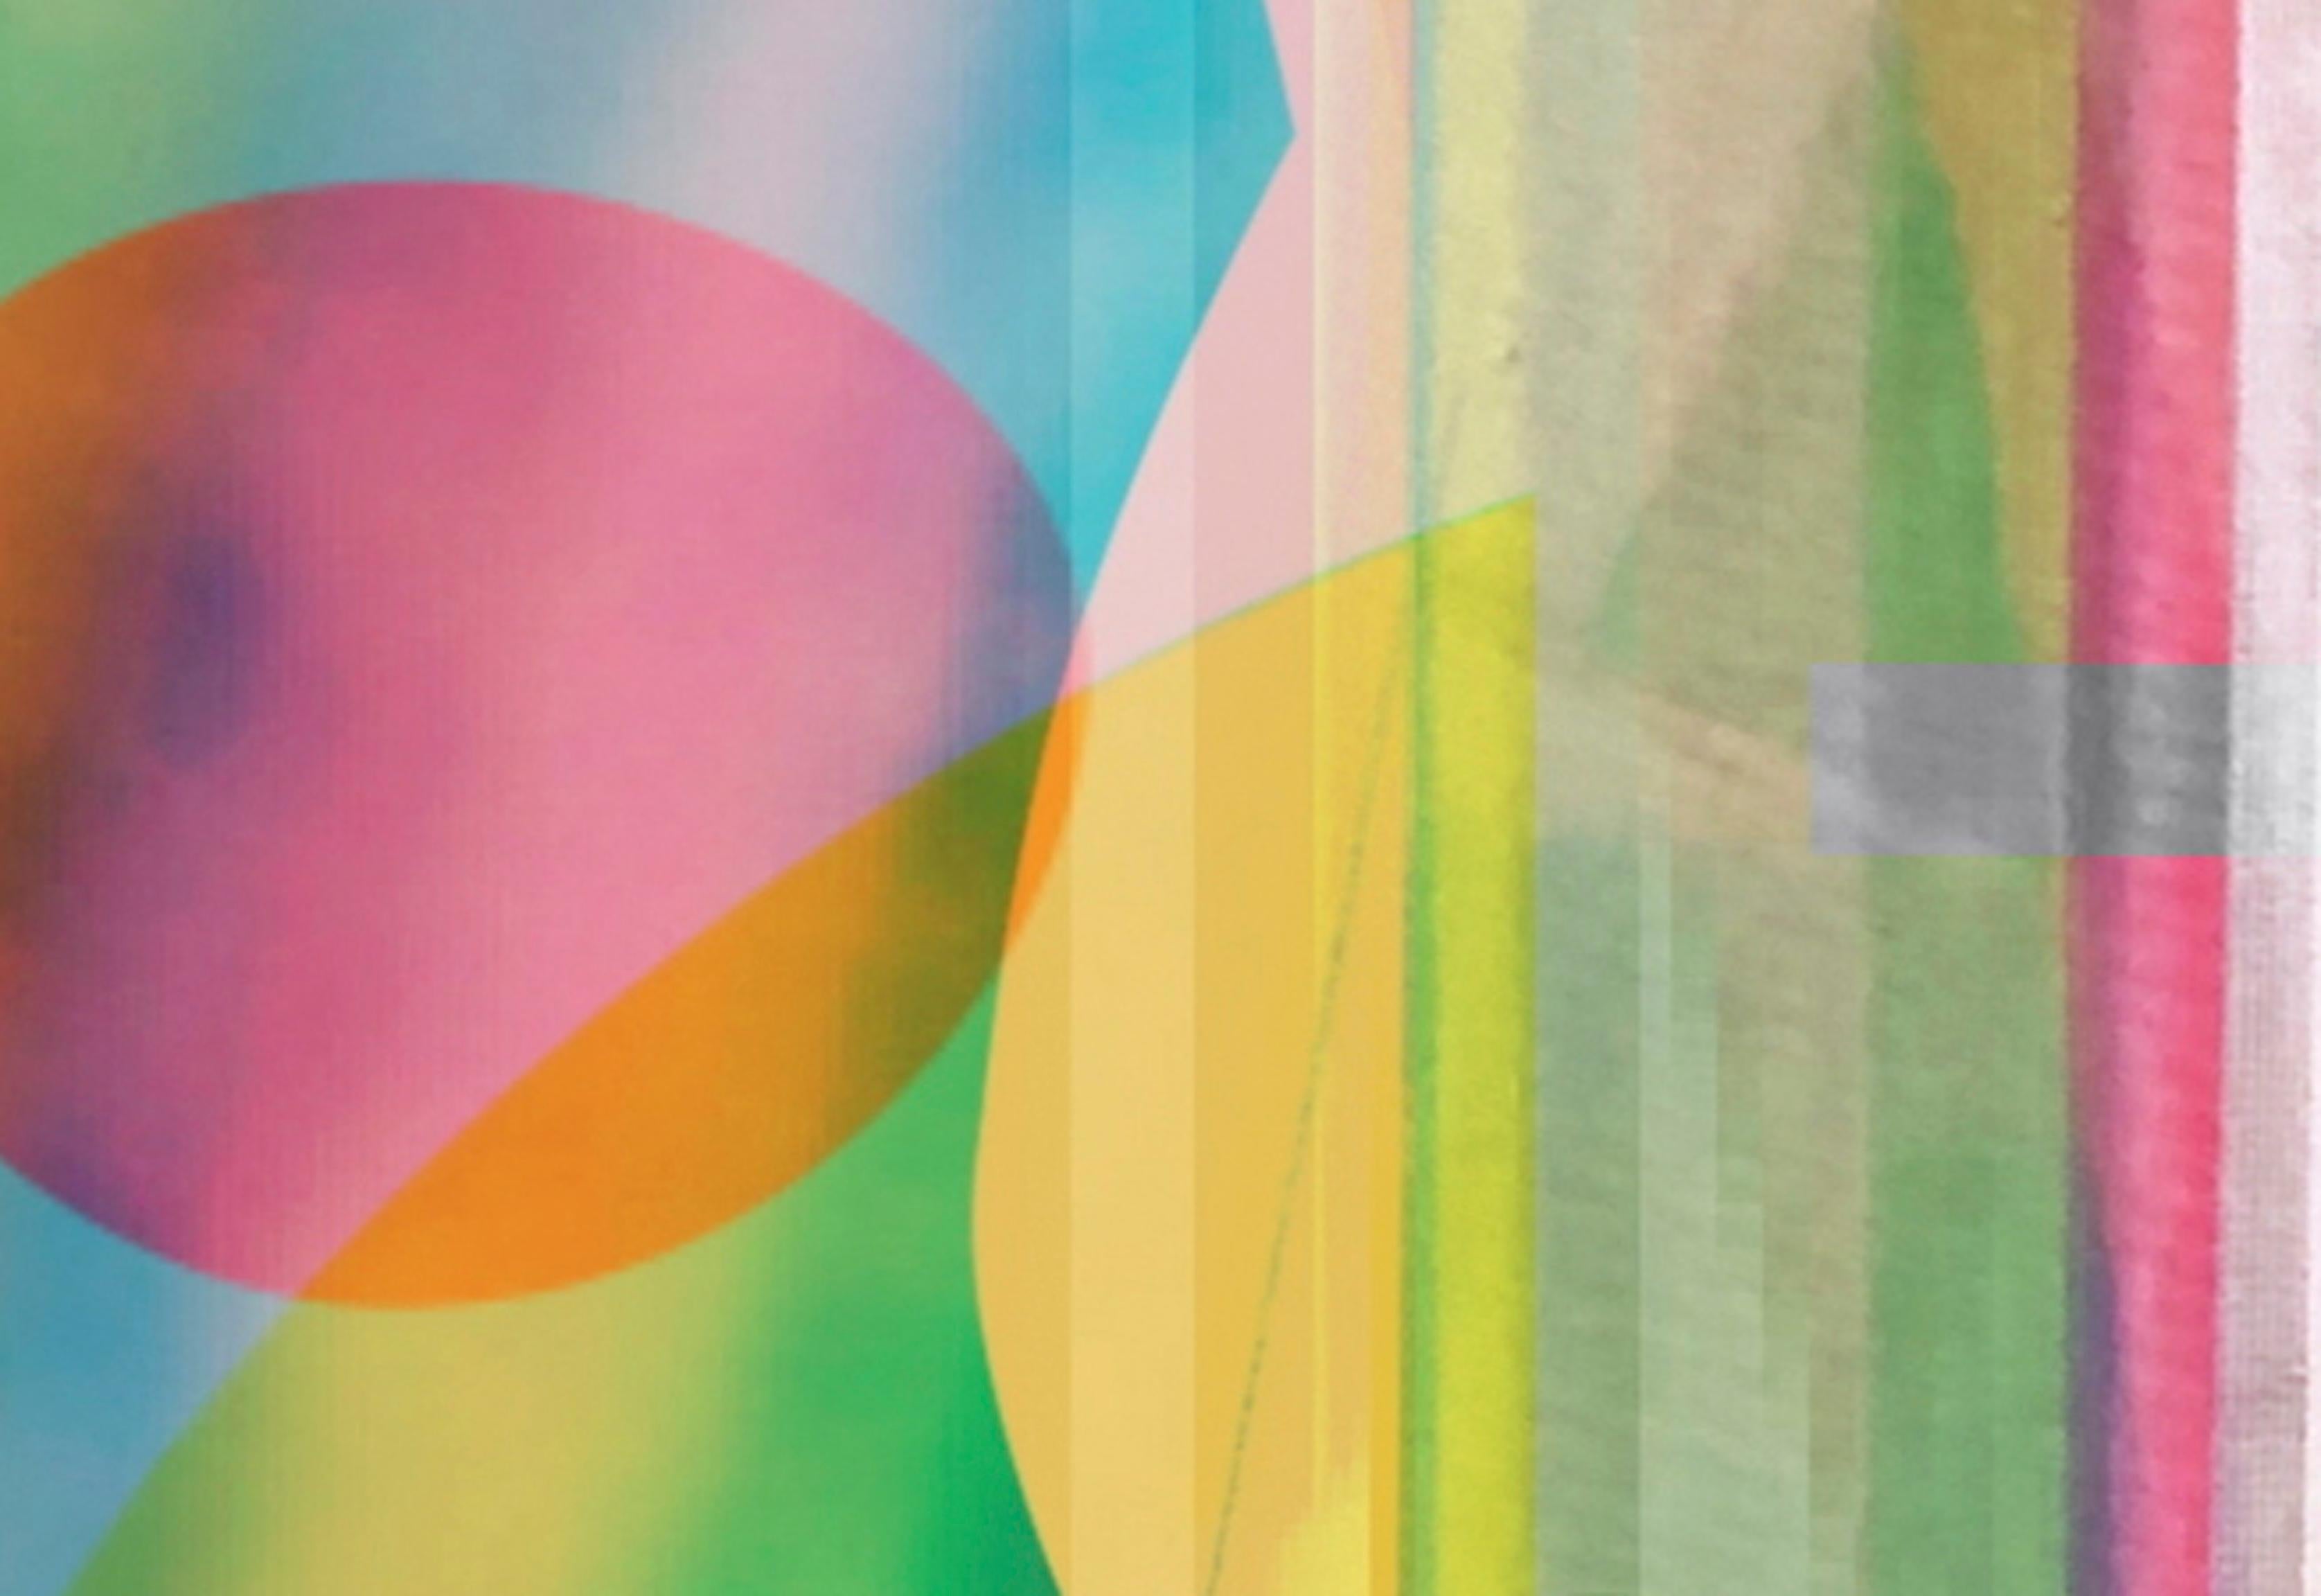 Zeitlos 21. Abstrakte Farbfotografie in limitierter Auflage (Geometrische Abstraktion), Photograph, von Monika Bravo